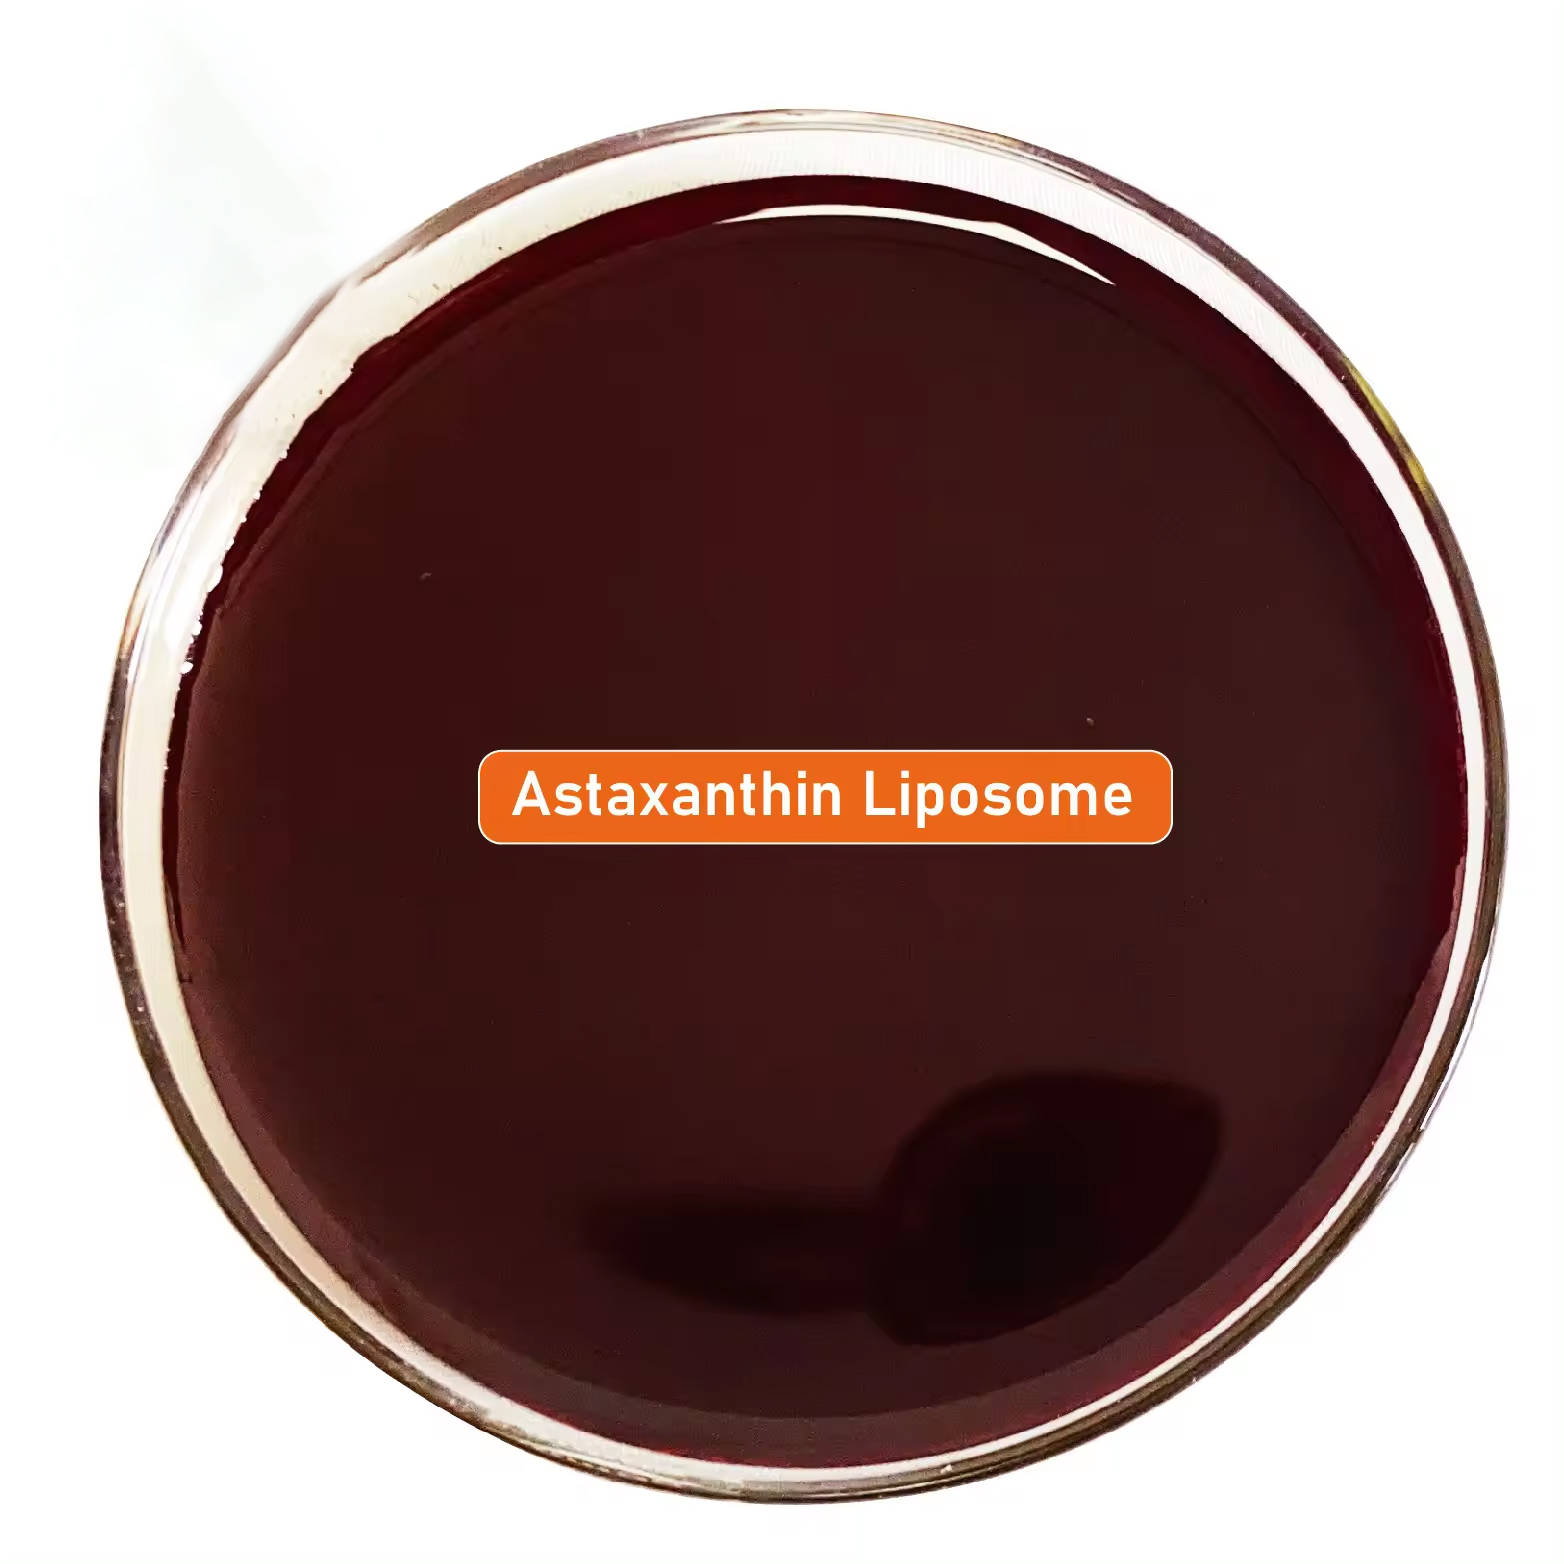 Высокое качество горячей продажи природных липосом астаксантин